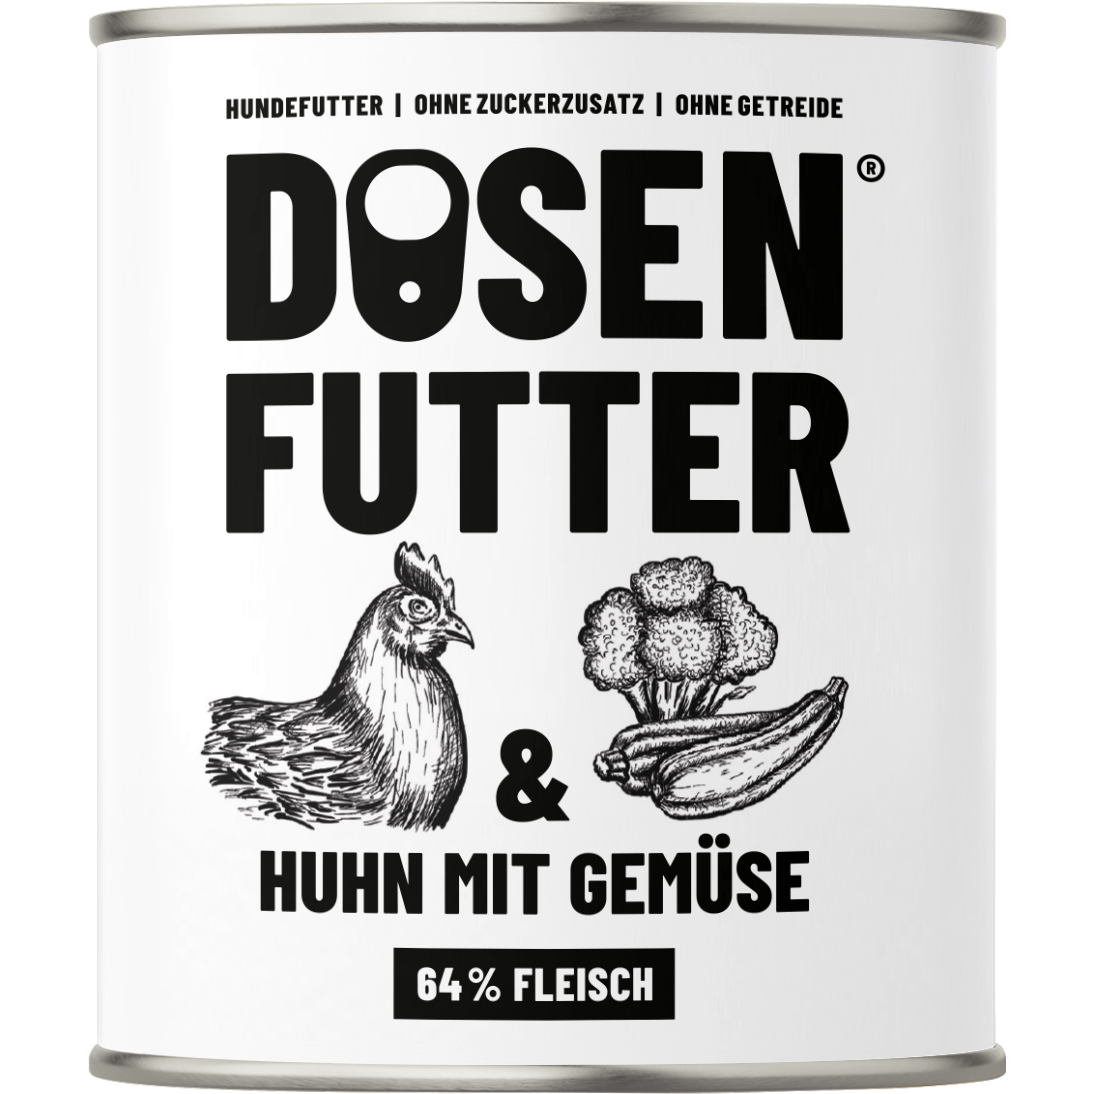 Dosenfutter® TESTBOX 6x800g Nassfutter